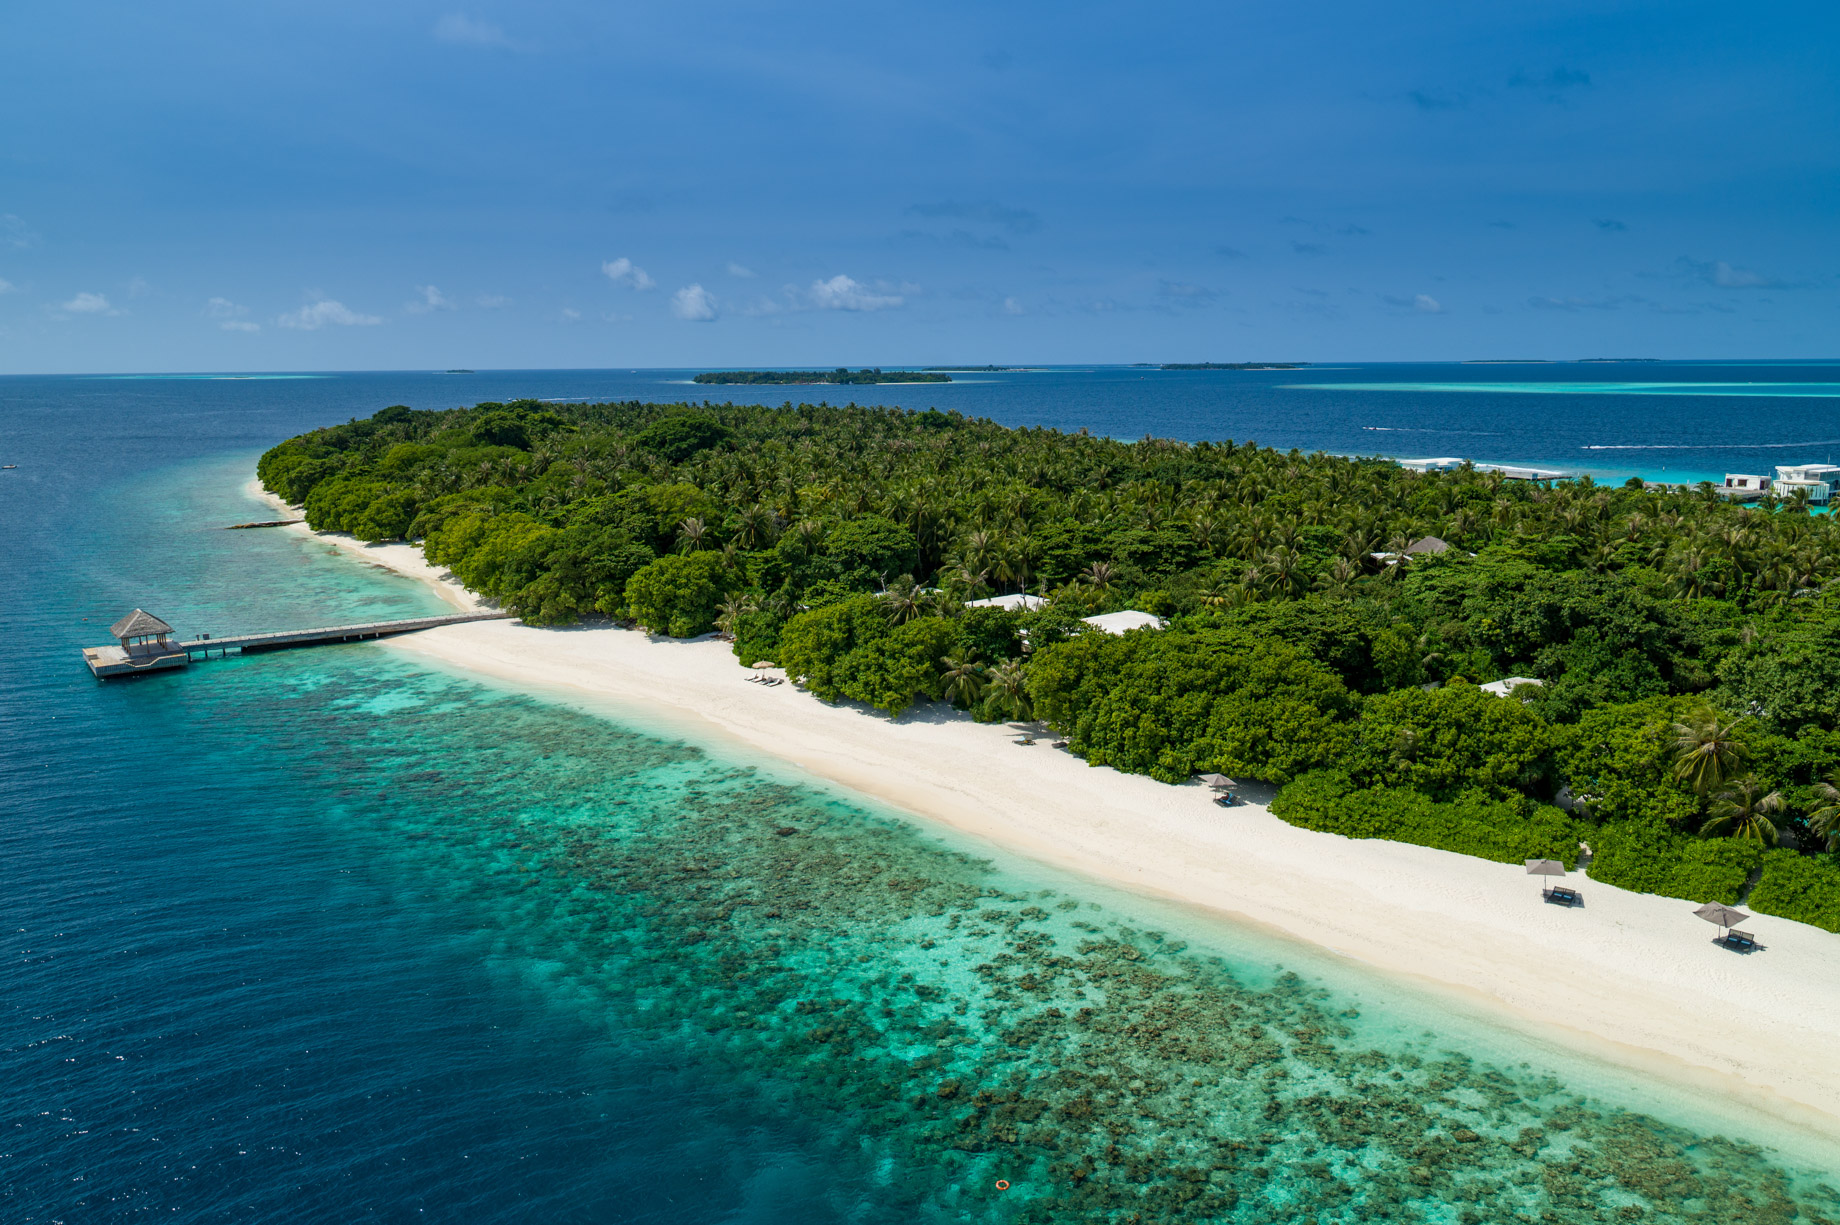 Amilla Fushi Resort and Residences – Baa Atoll, Maldives – Private Island Aerial